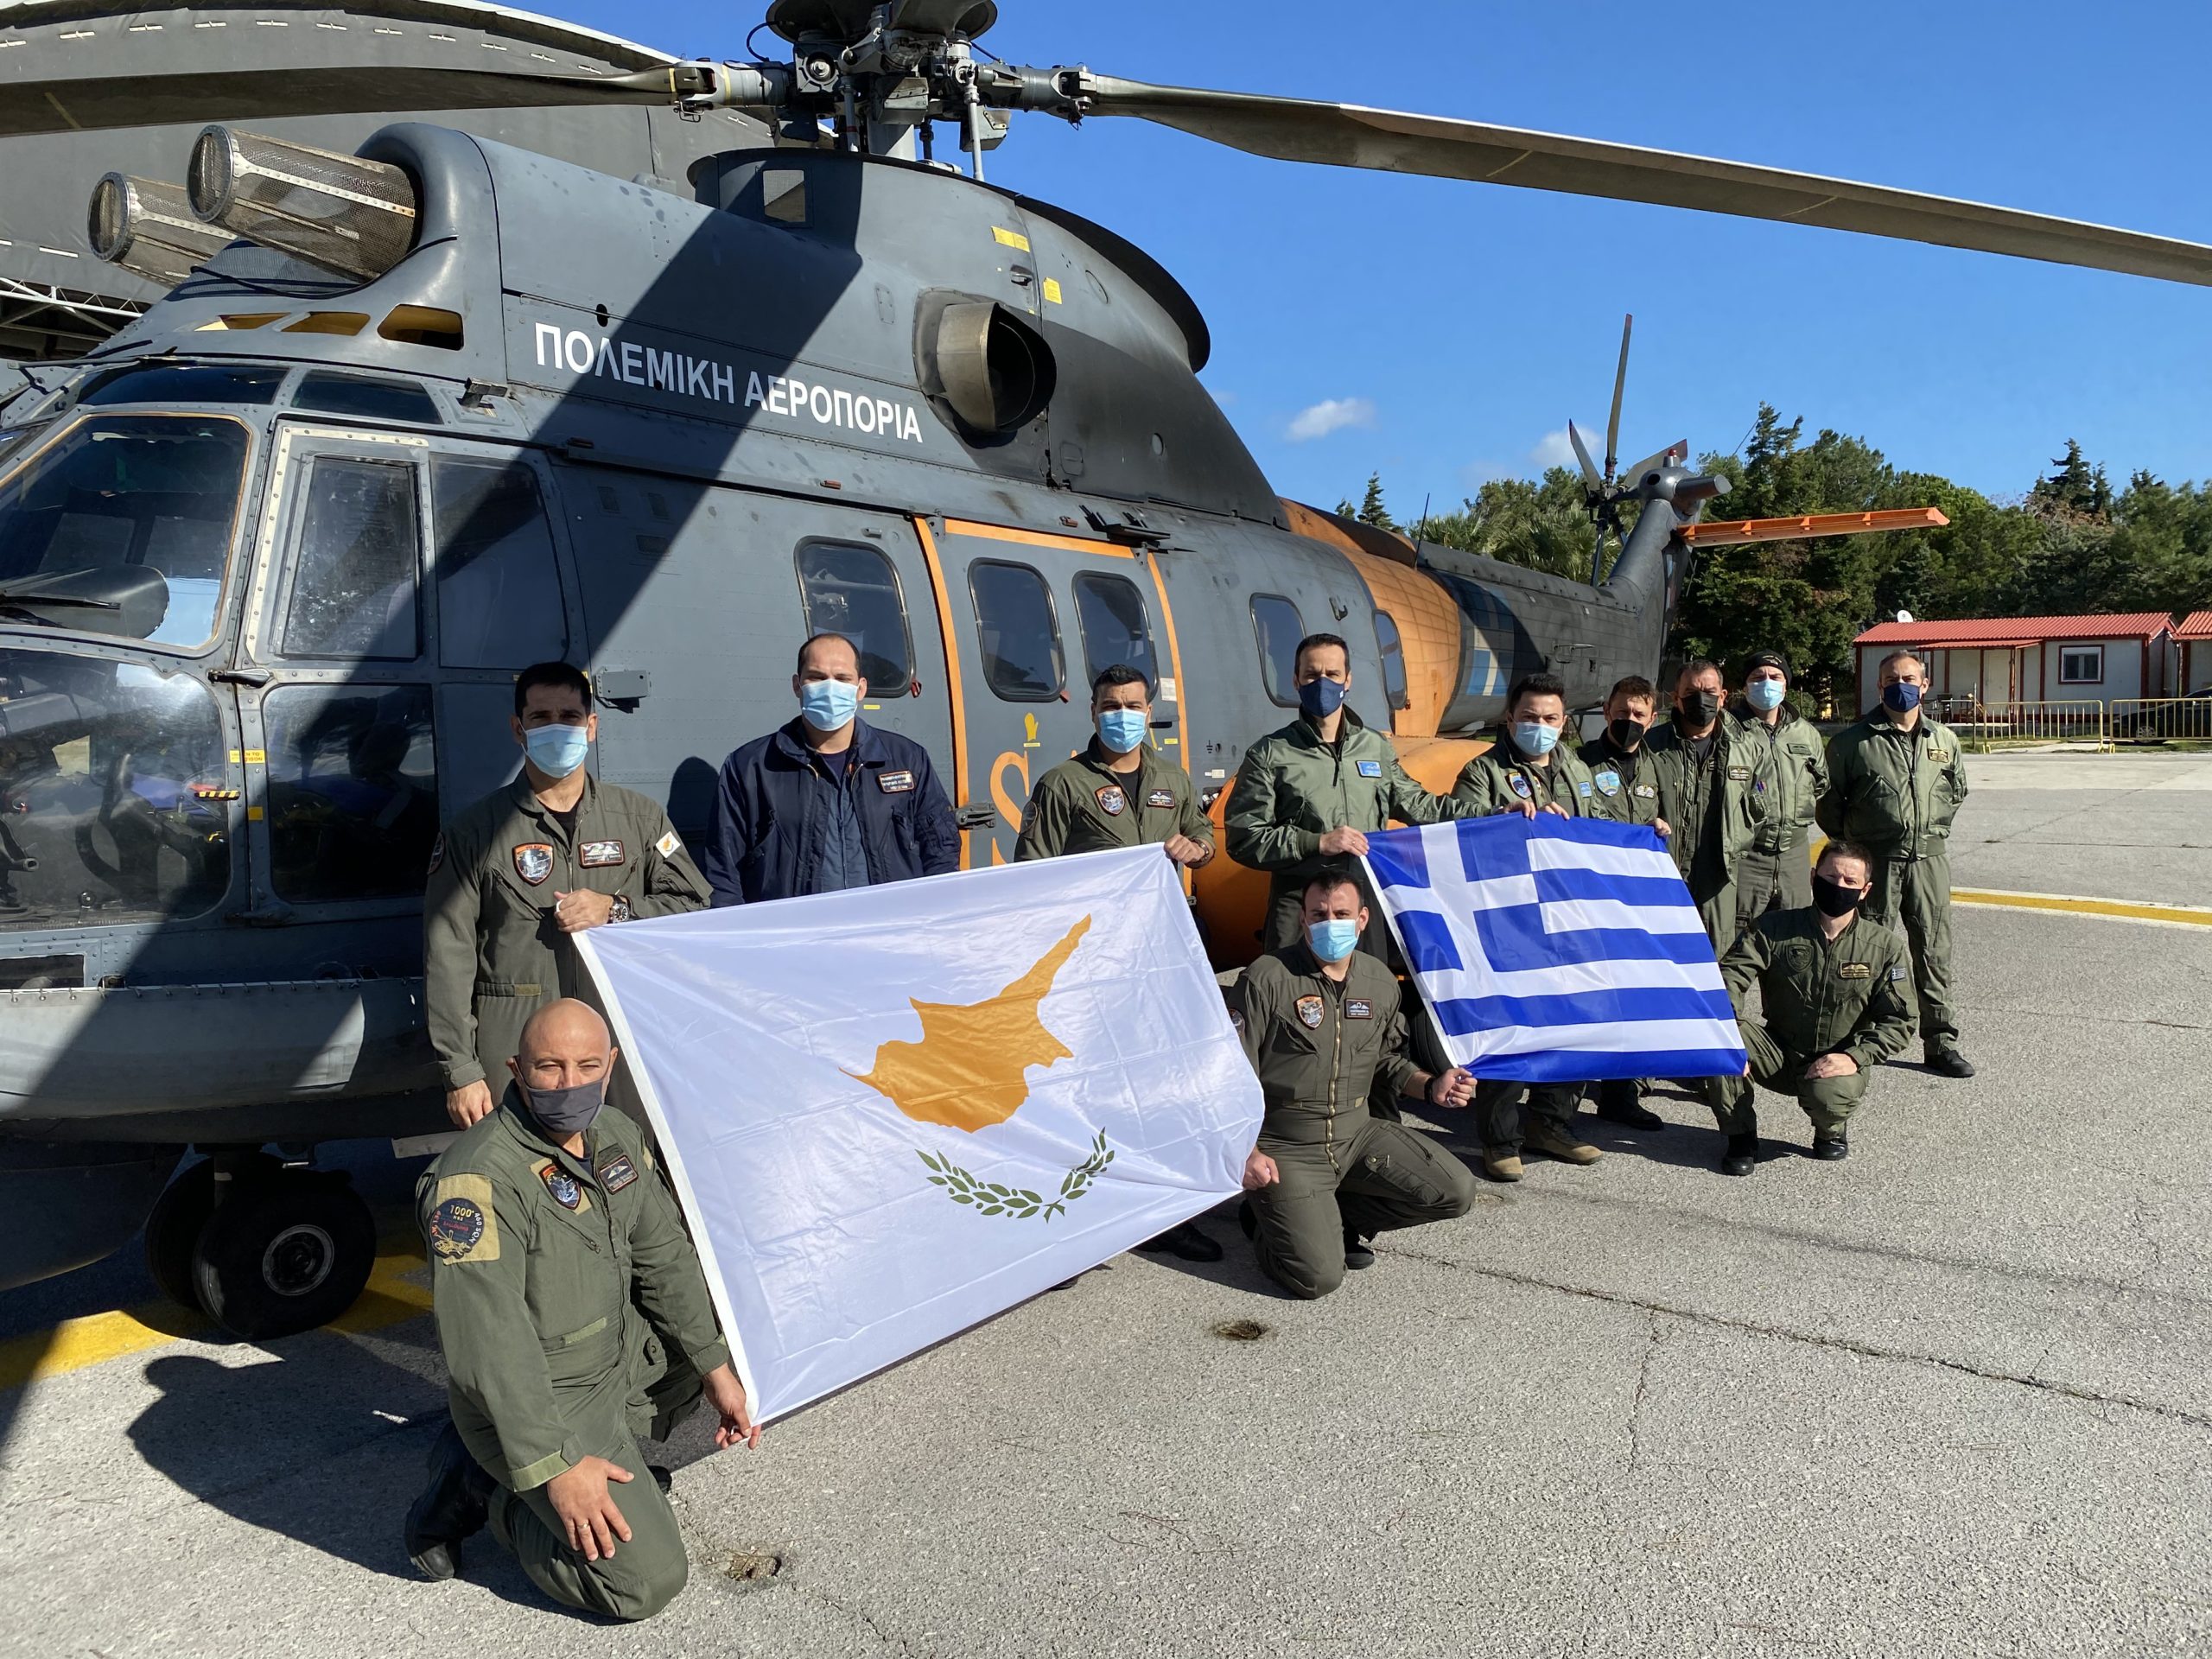 O “Αετός” Ελλάδας – Κύπρου άνοιξε τα φτερά του μεταξύ Ρόδου και Καστελλόριζου – ΦΩΤΟ